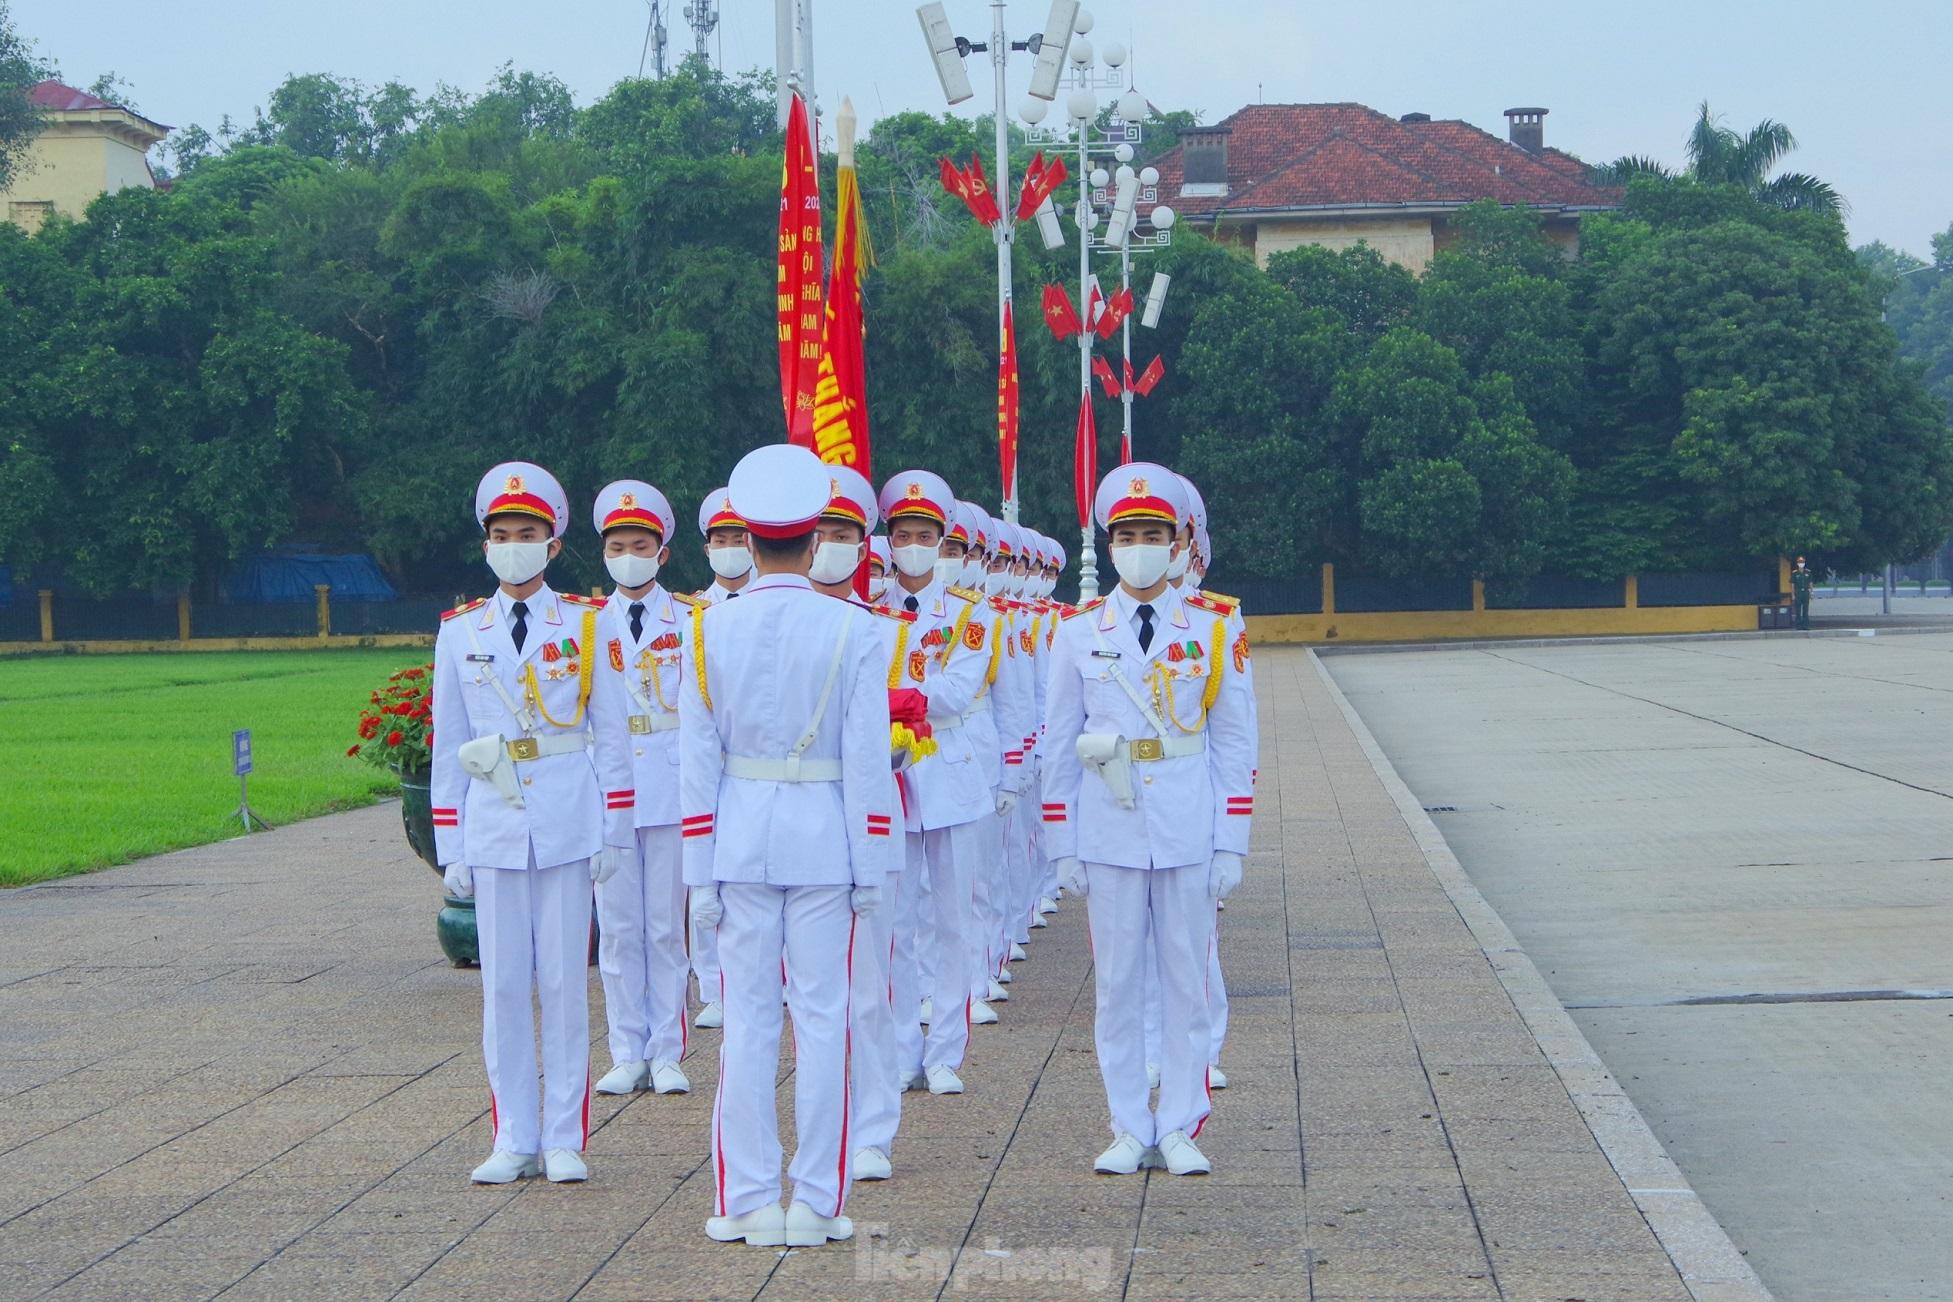 Theo Trung tá Nguyễn Dự Long, Đội trưởng Đội Tiêu binh Danh dự, Đoàn 275, BTL Bảo vệ Lăng Chủ tịch Hồ Chí Minh, Lễ chào cờ được thực hiện từ 6 giờ sáng hằng ngày trong mùa nóng (từ 1/4 đến hết tháng 10) và bắt đầu từ 6 giờ 30 trong mùa lạnh (từ 1/11 đến hết tháng 3). Lễ hạ cờ được thực hiện vào 21 giờ hằng ngày.